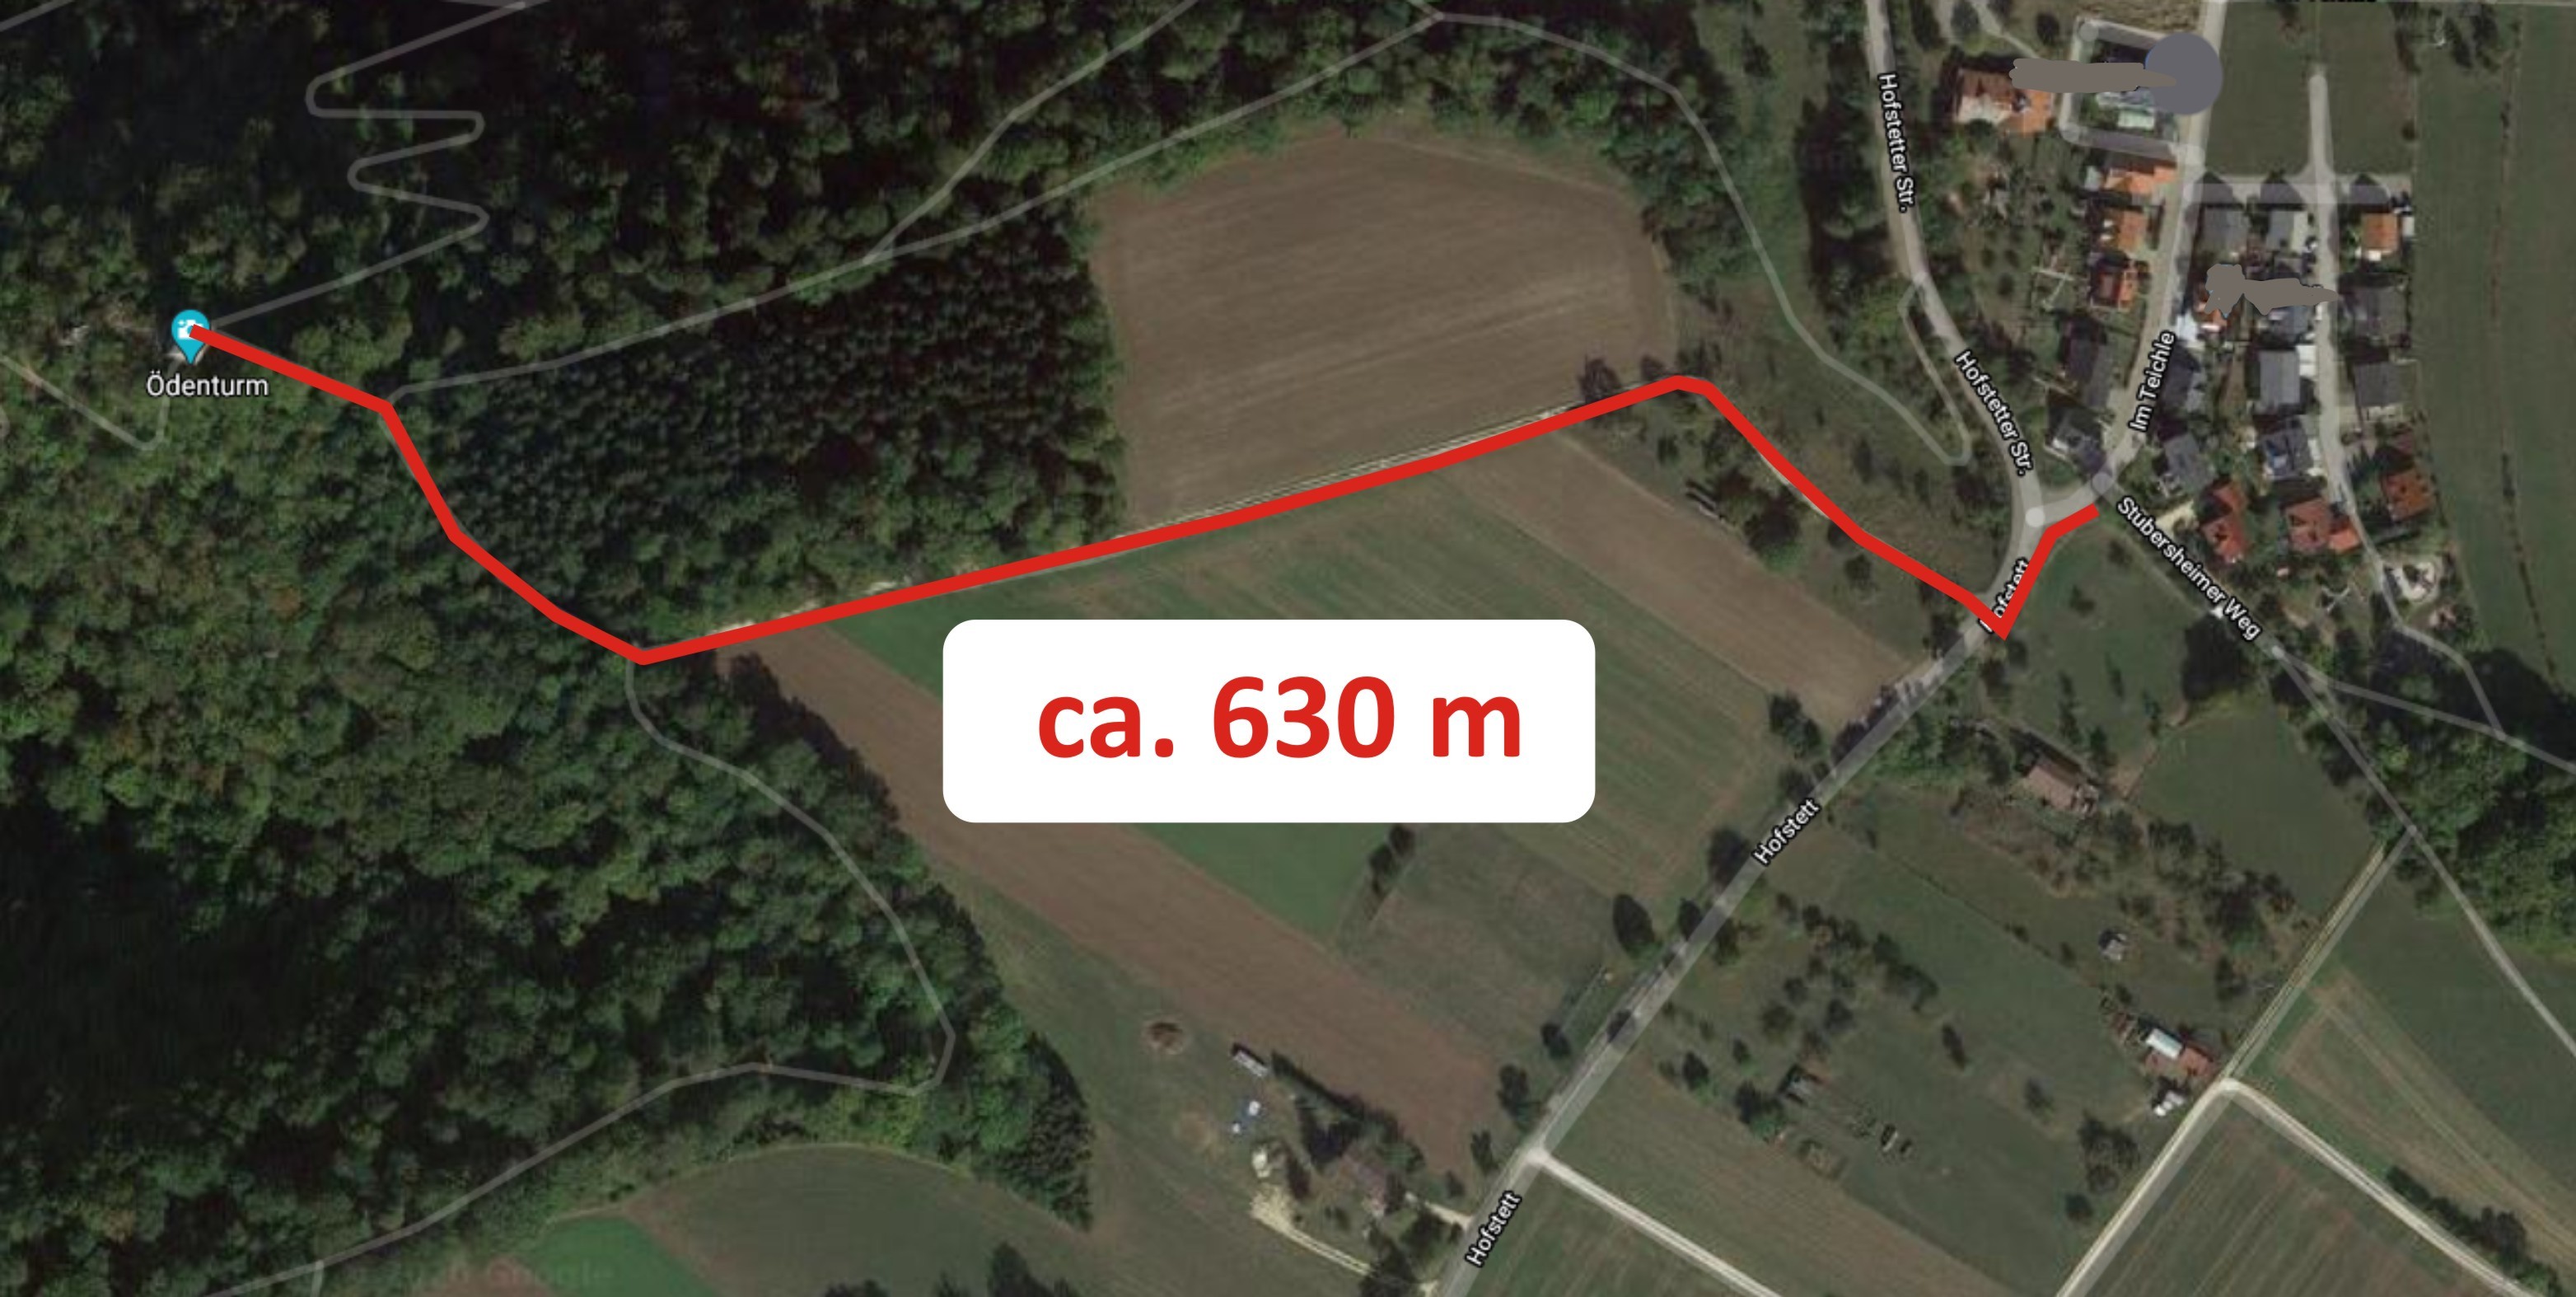 Lageplan der geplanten Kabeltrasse zum Ödenturm | Realisierung durch den Förderverein Ödenturm | Kostenschätzung 60.000 €